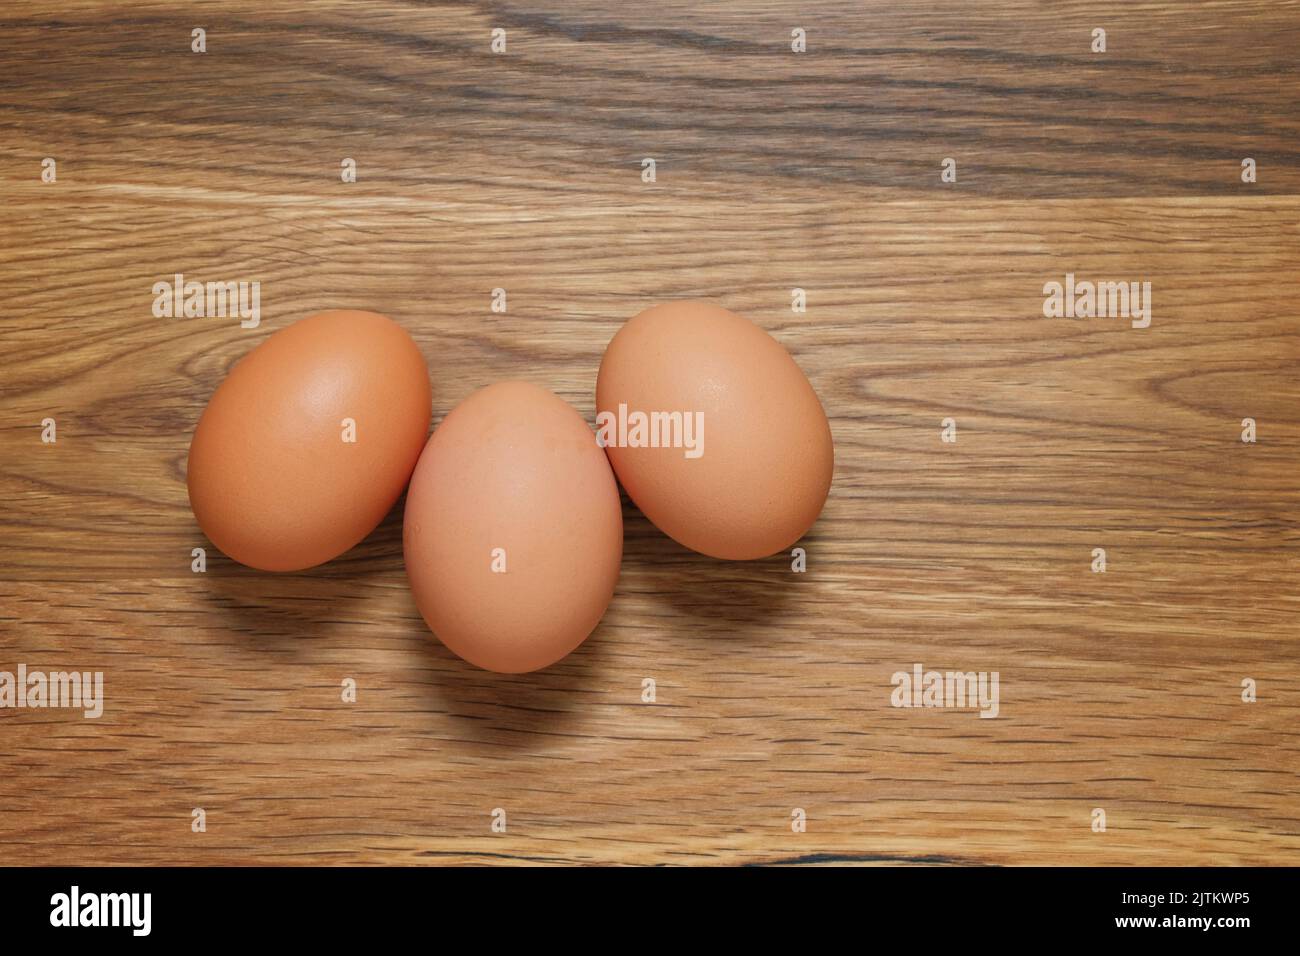 Tres huevos de gallinas marrón disparó desde arriba en una mesa de madera Foto de stock